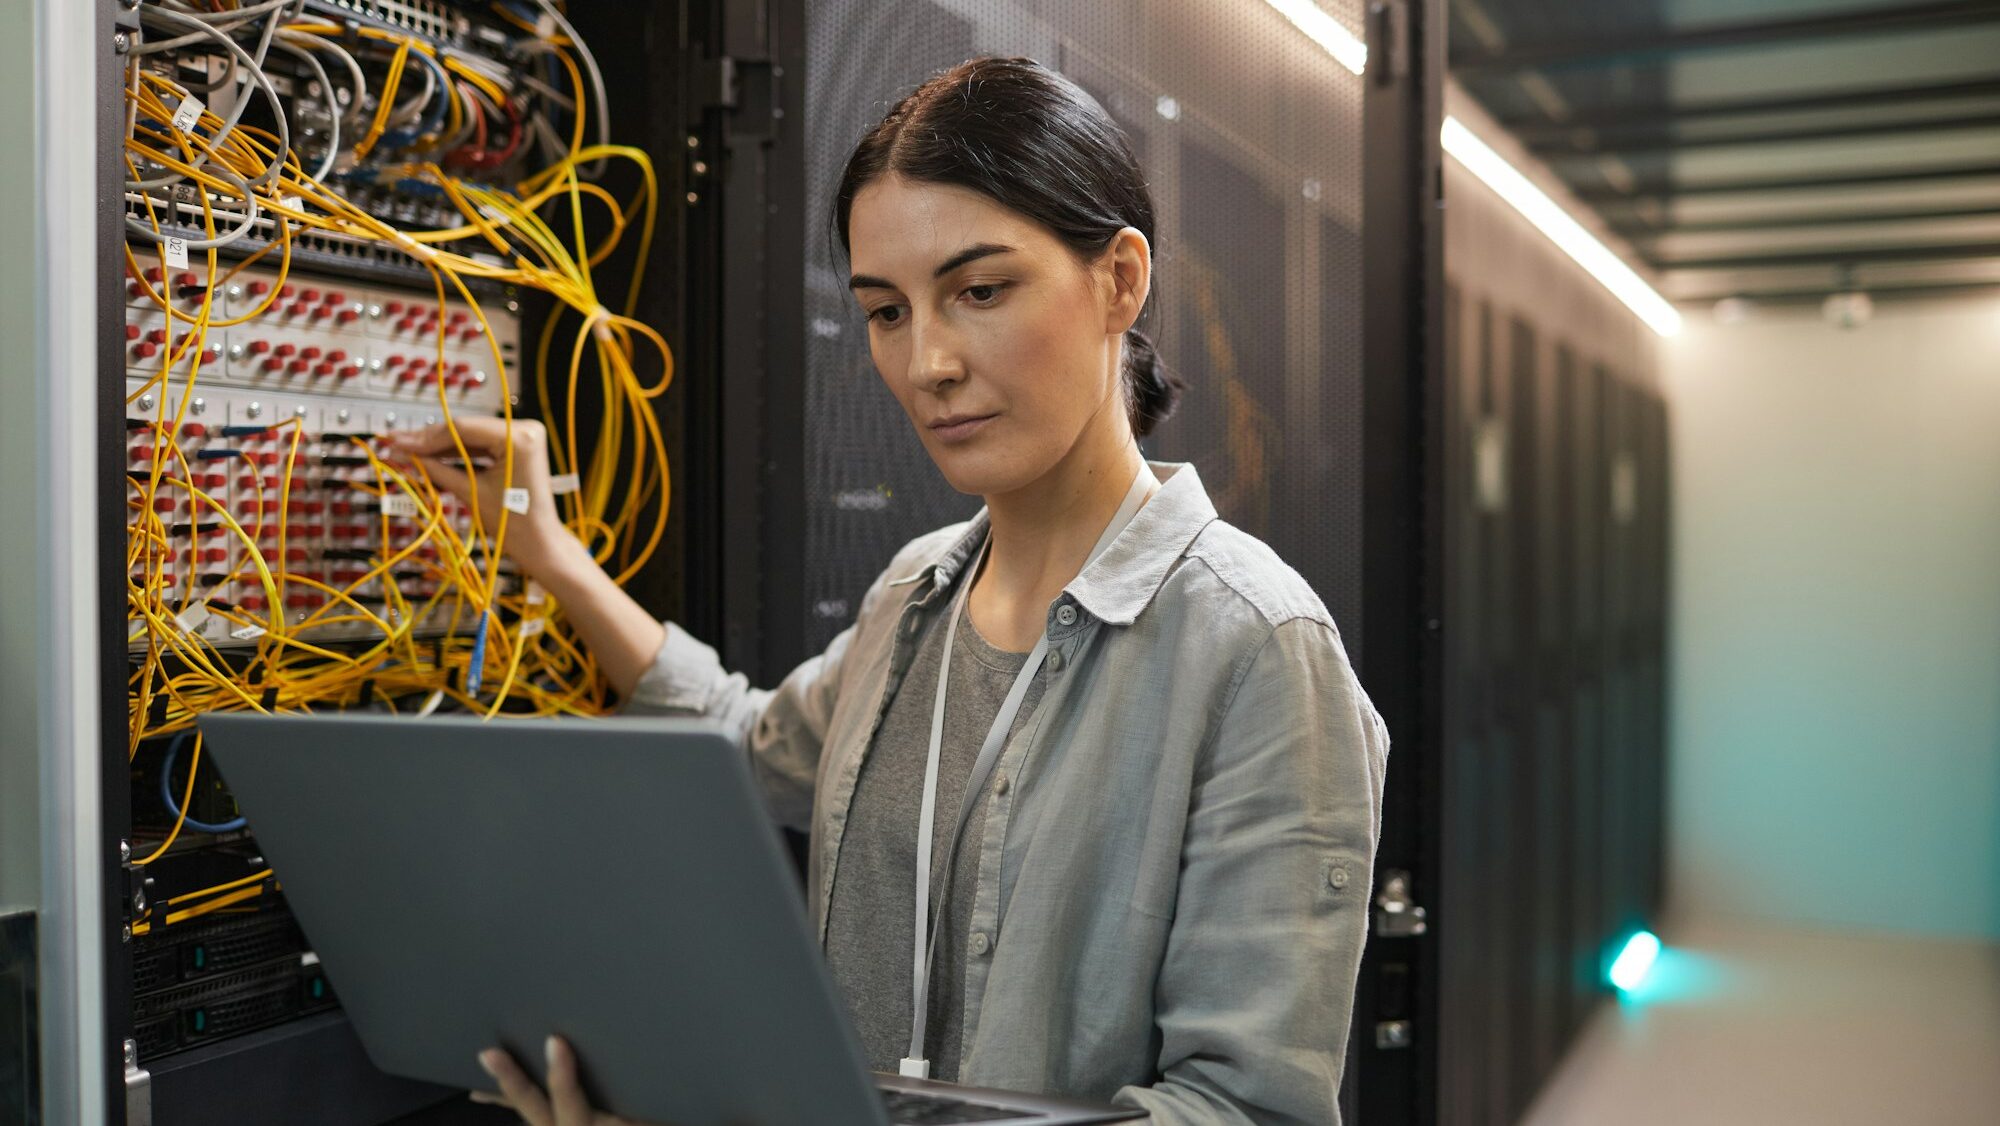 Female Network Technician Inspecting Servers in Data Center